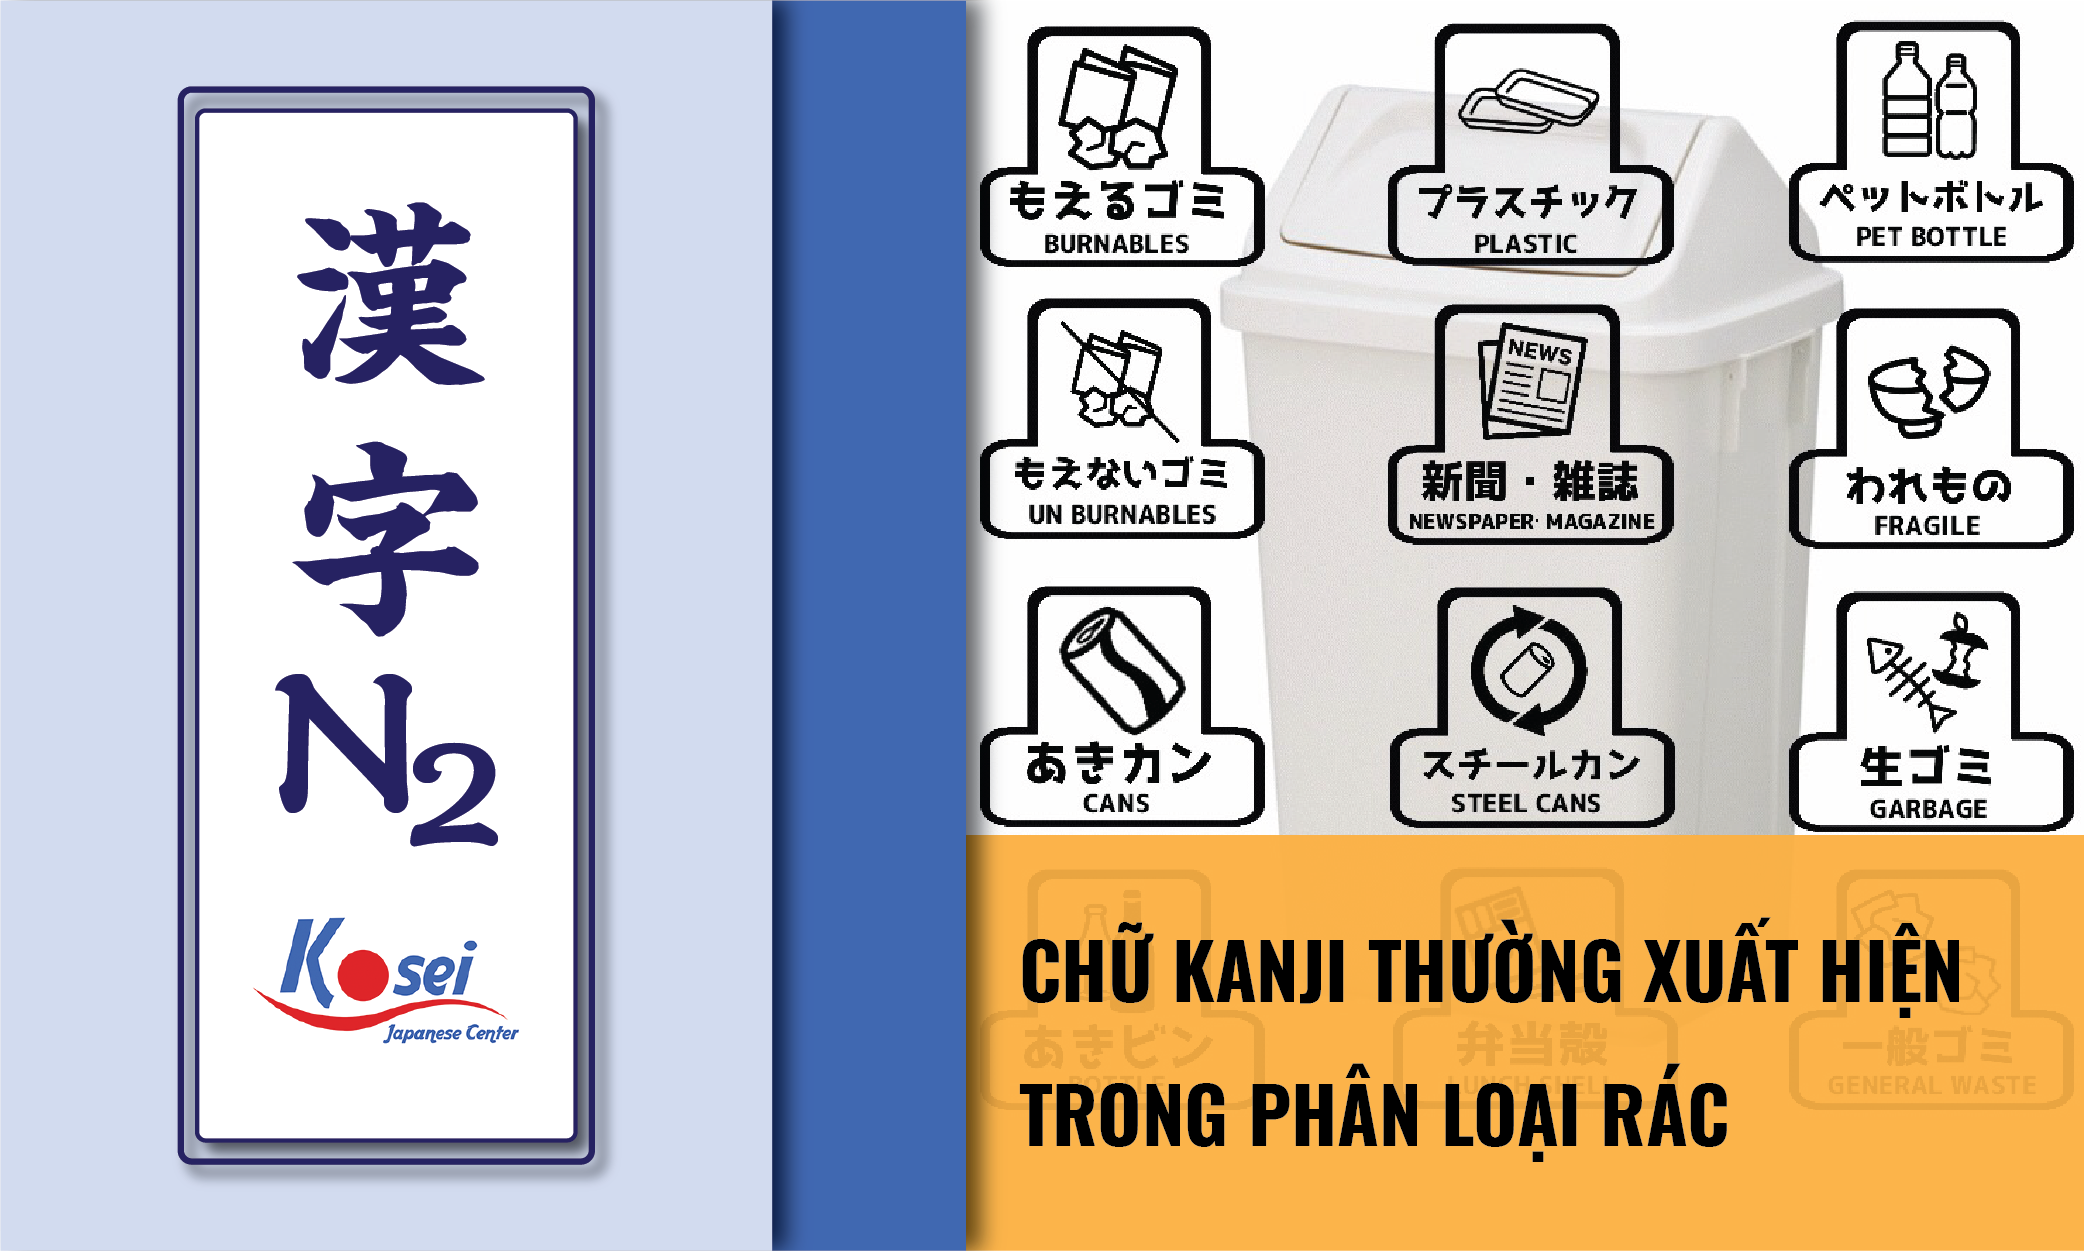 kanji n2 phân loại rác